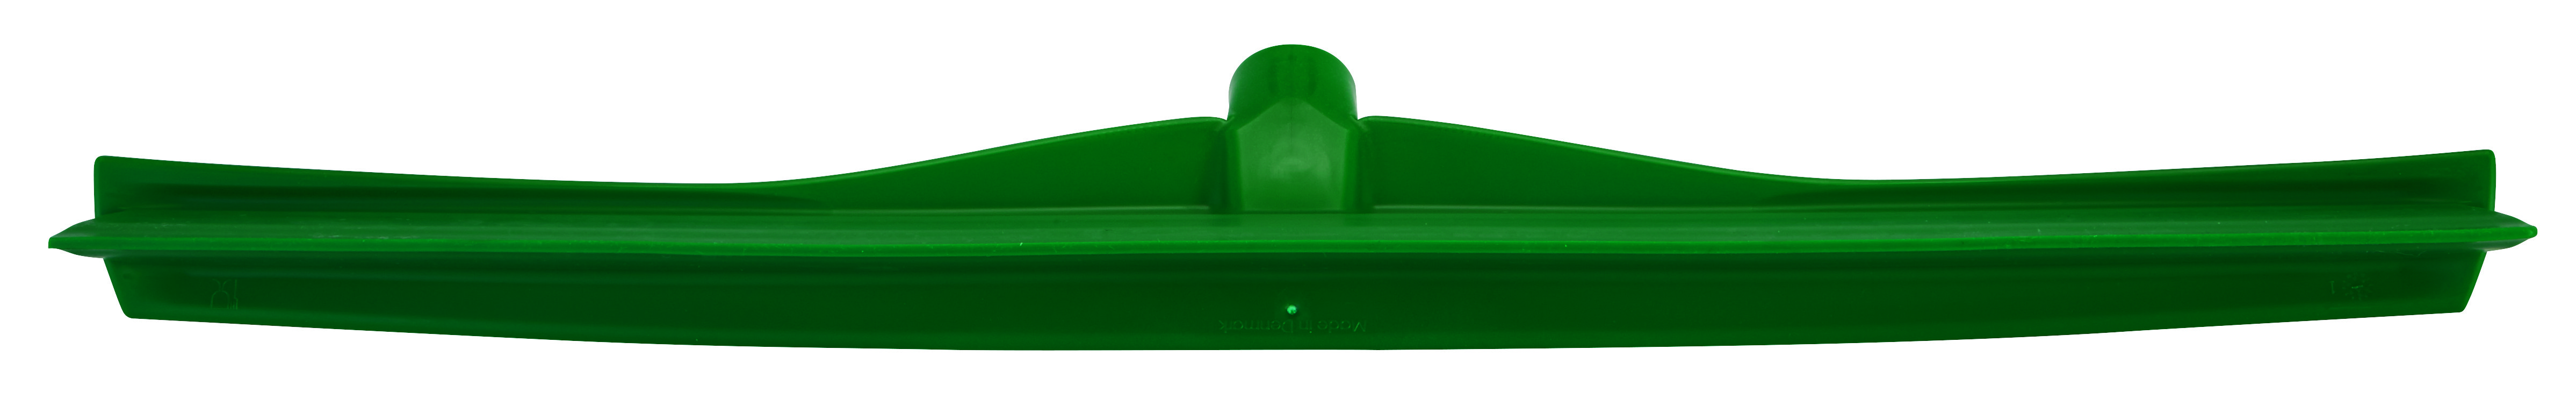 Сгон Vikan сверхгигиеничный для стен, полов и рабочих поверхностей, 600 мм, зеленый